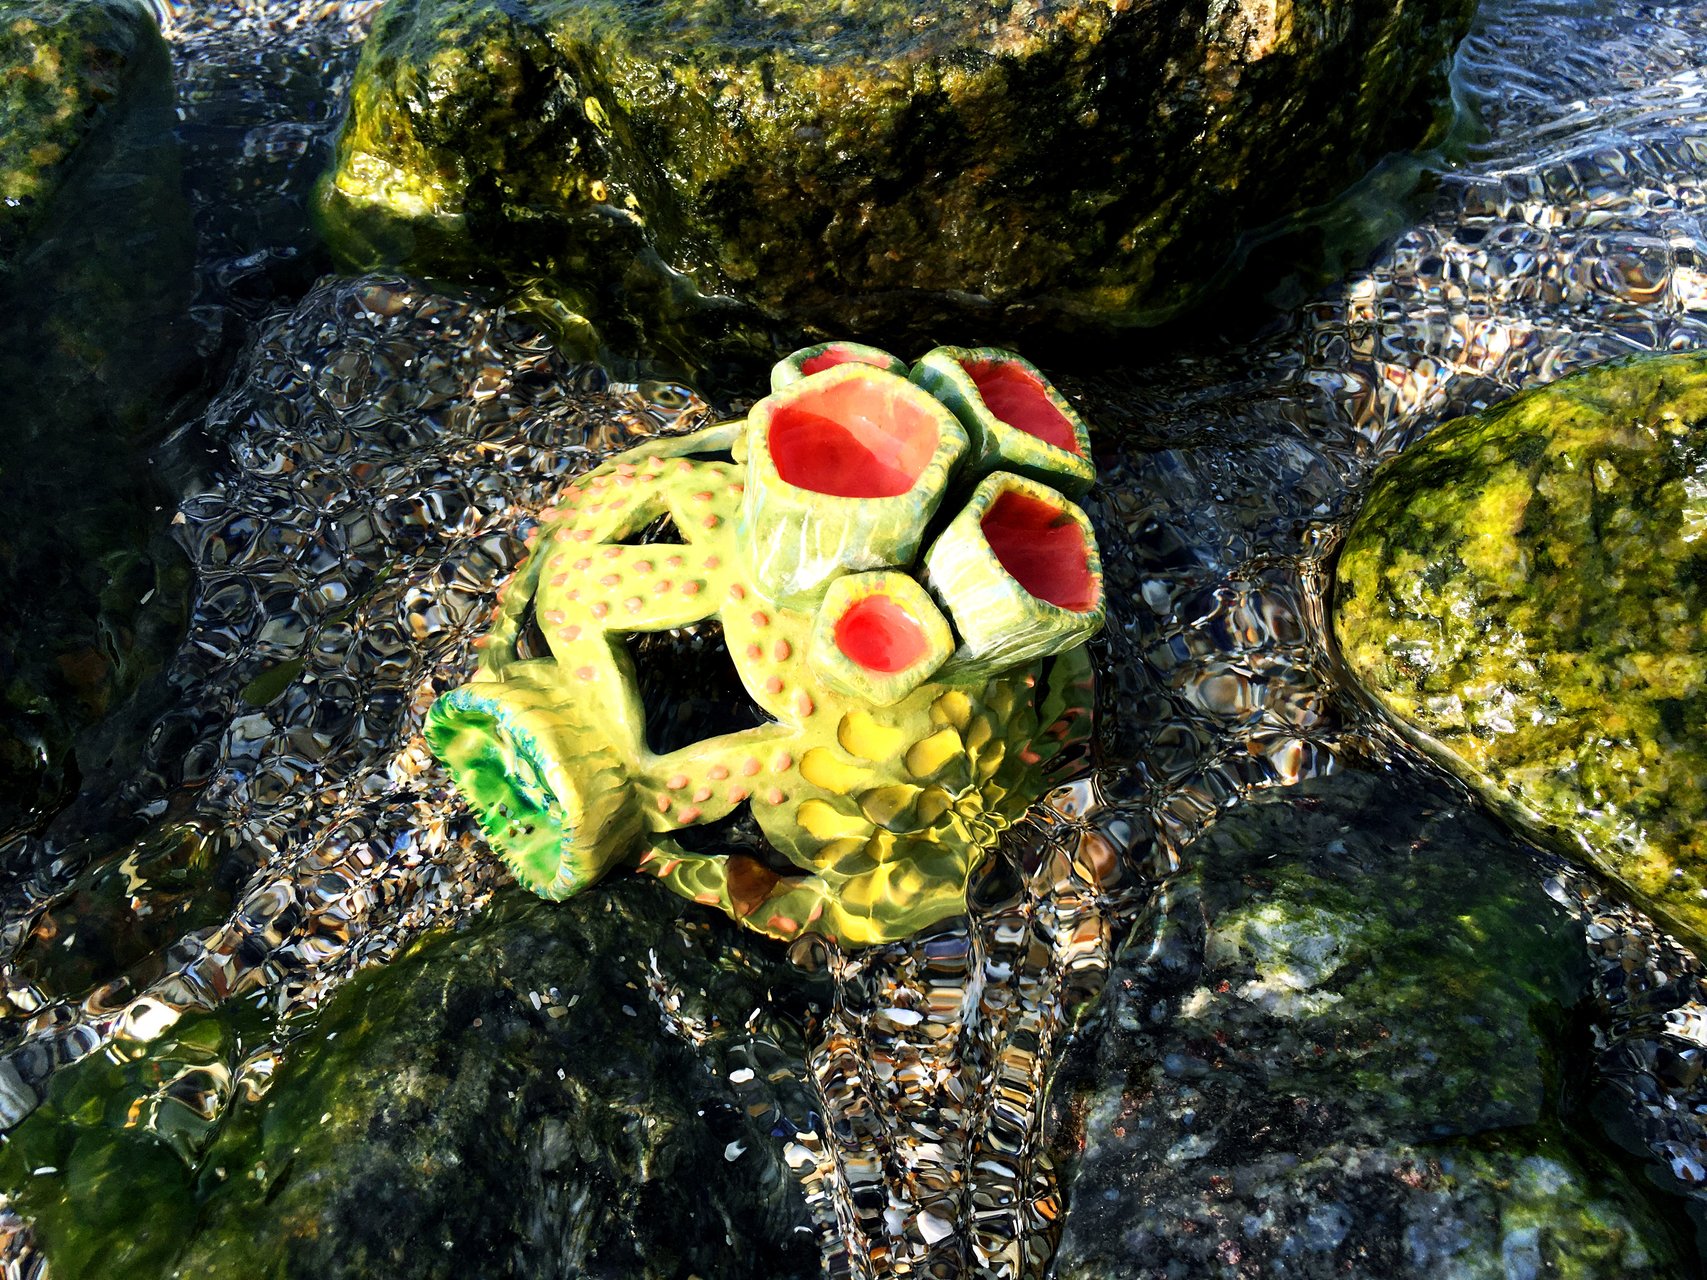 Coral green - Ceramic for aquarium, width 12 cm, height 9 cm, photo 6 of 6.